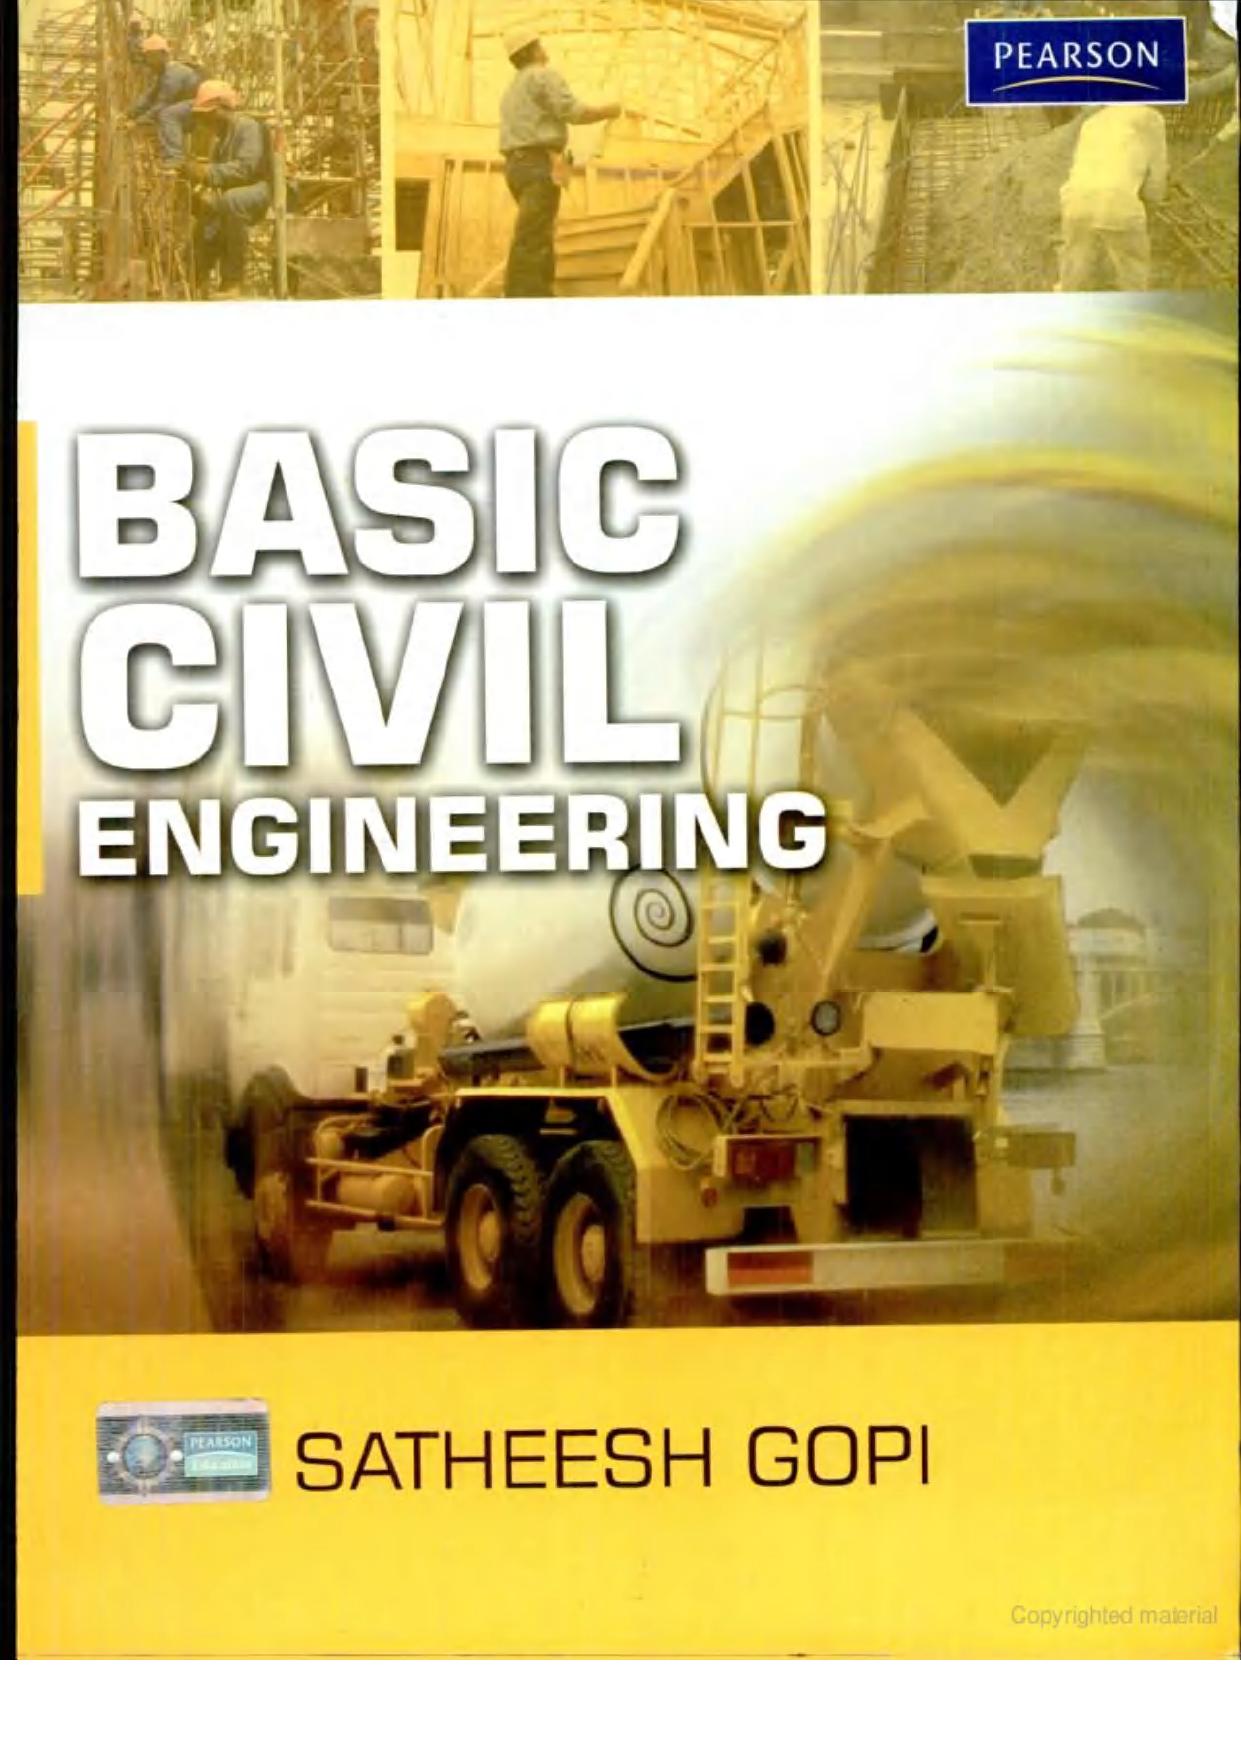 Basic Civil Engineering by SatheeshGopi 2010